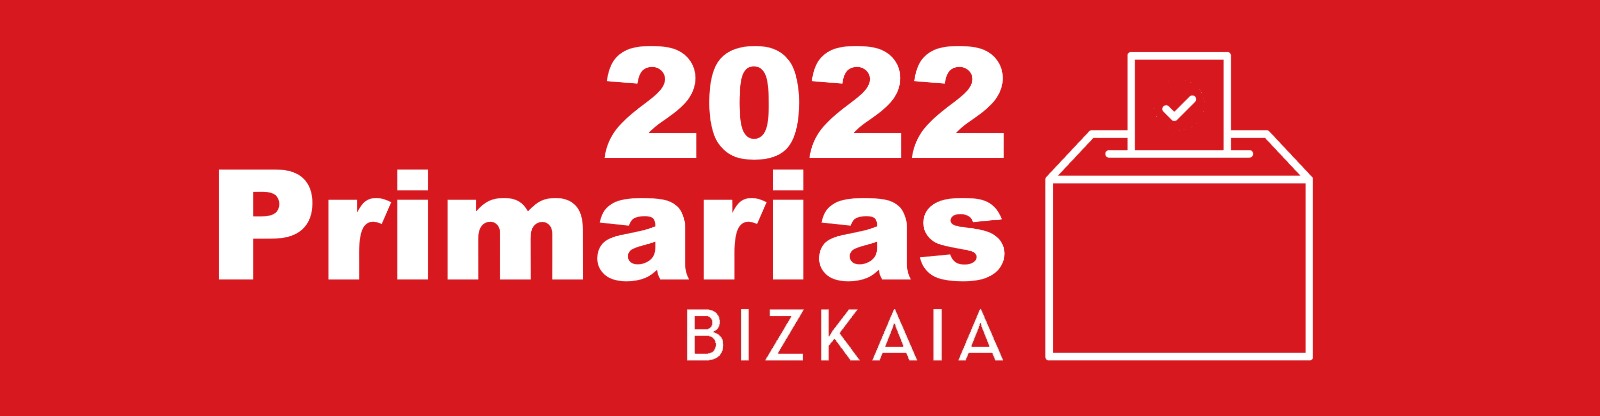 PRIMARIAS 2022